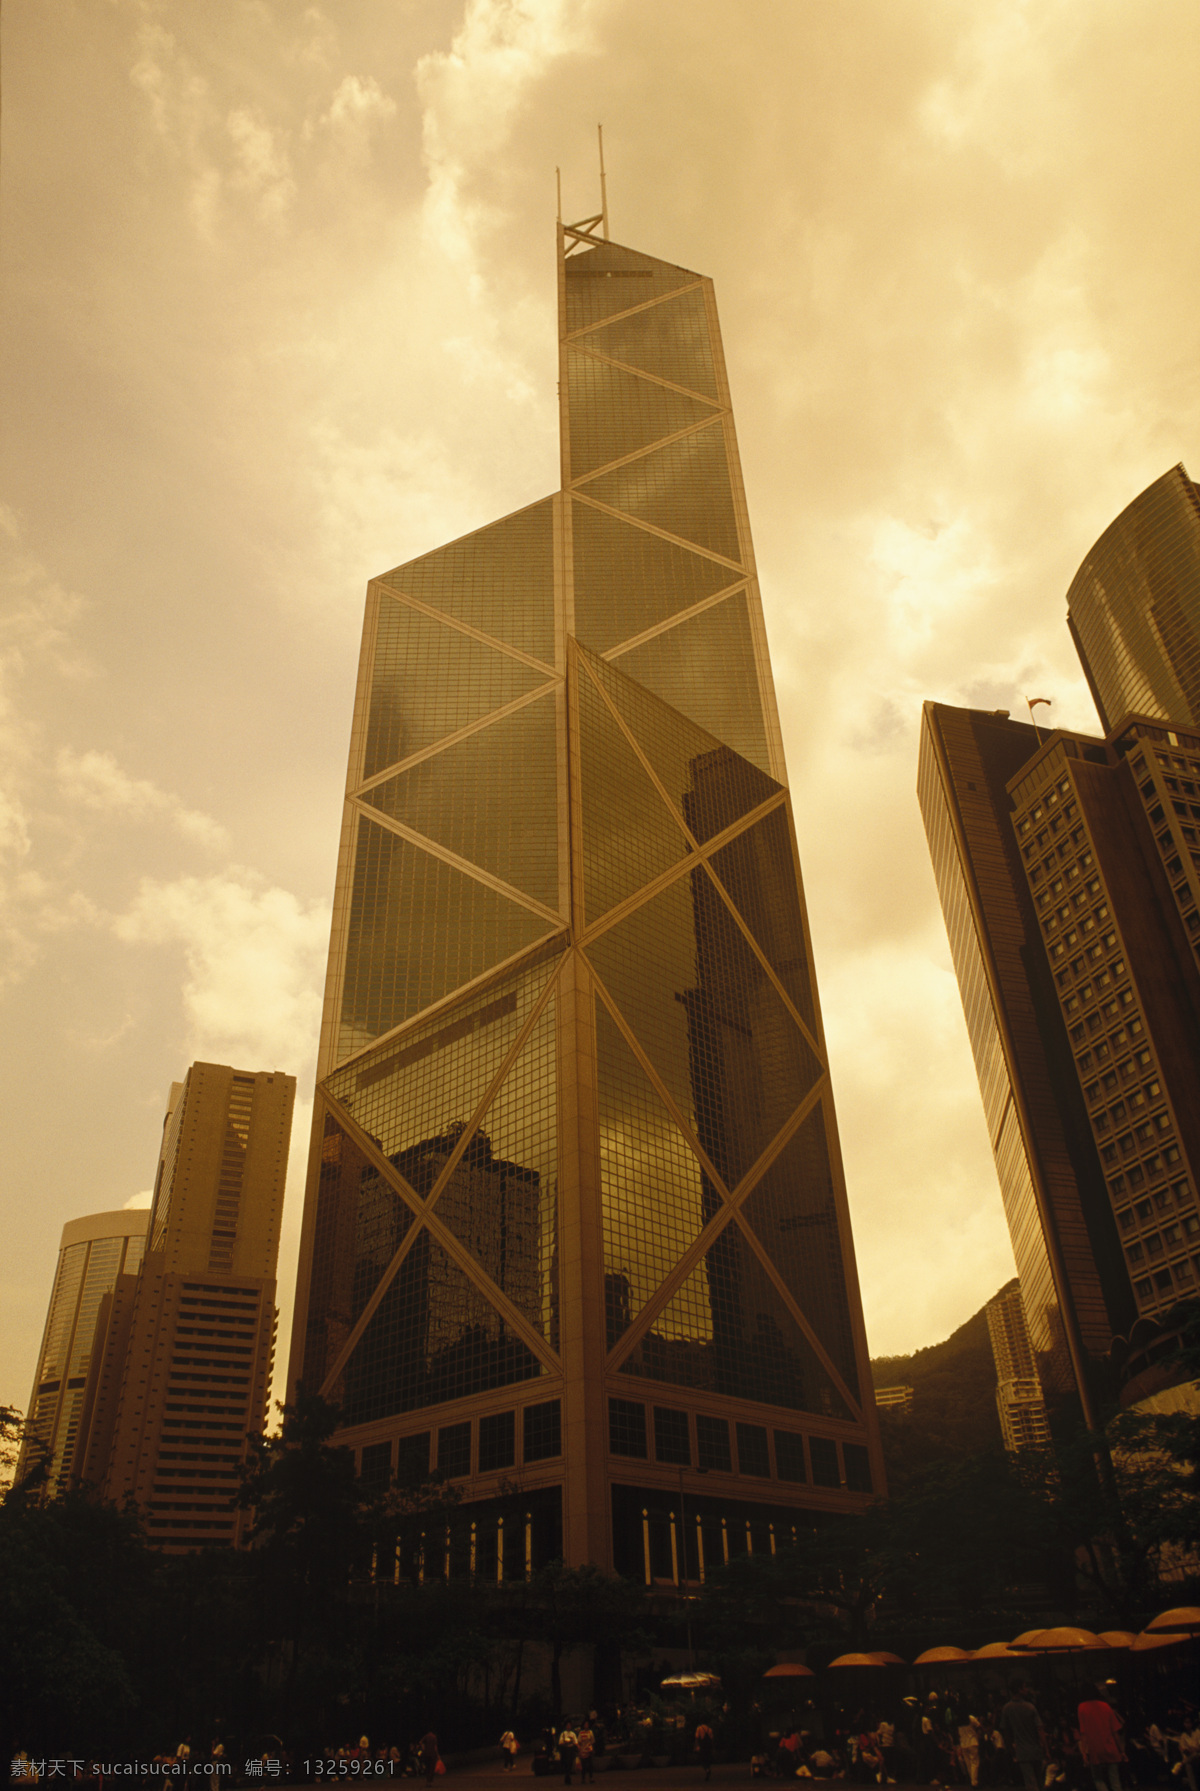 黄昏 时 中银大厦 香港 城市风光 高楼大厦 建筑 风景 繁华 繁荣 街道 晚霞 摄影图 高清图片 环境家居